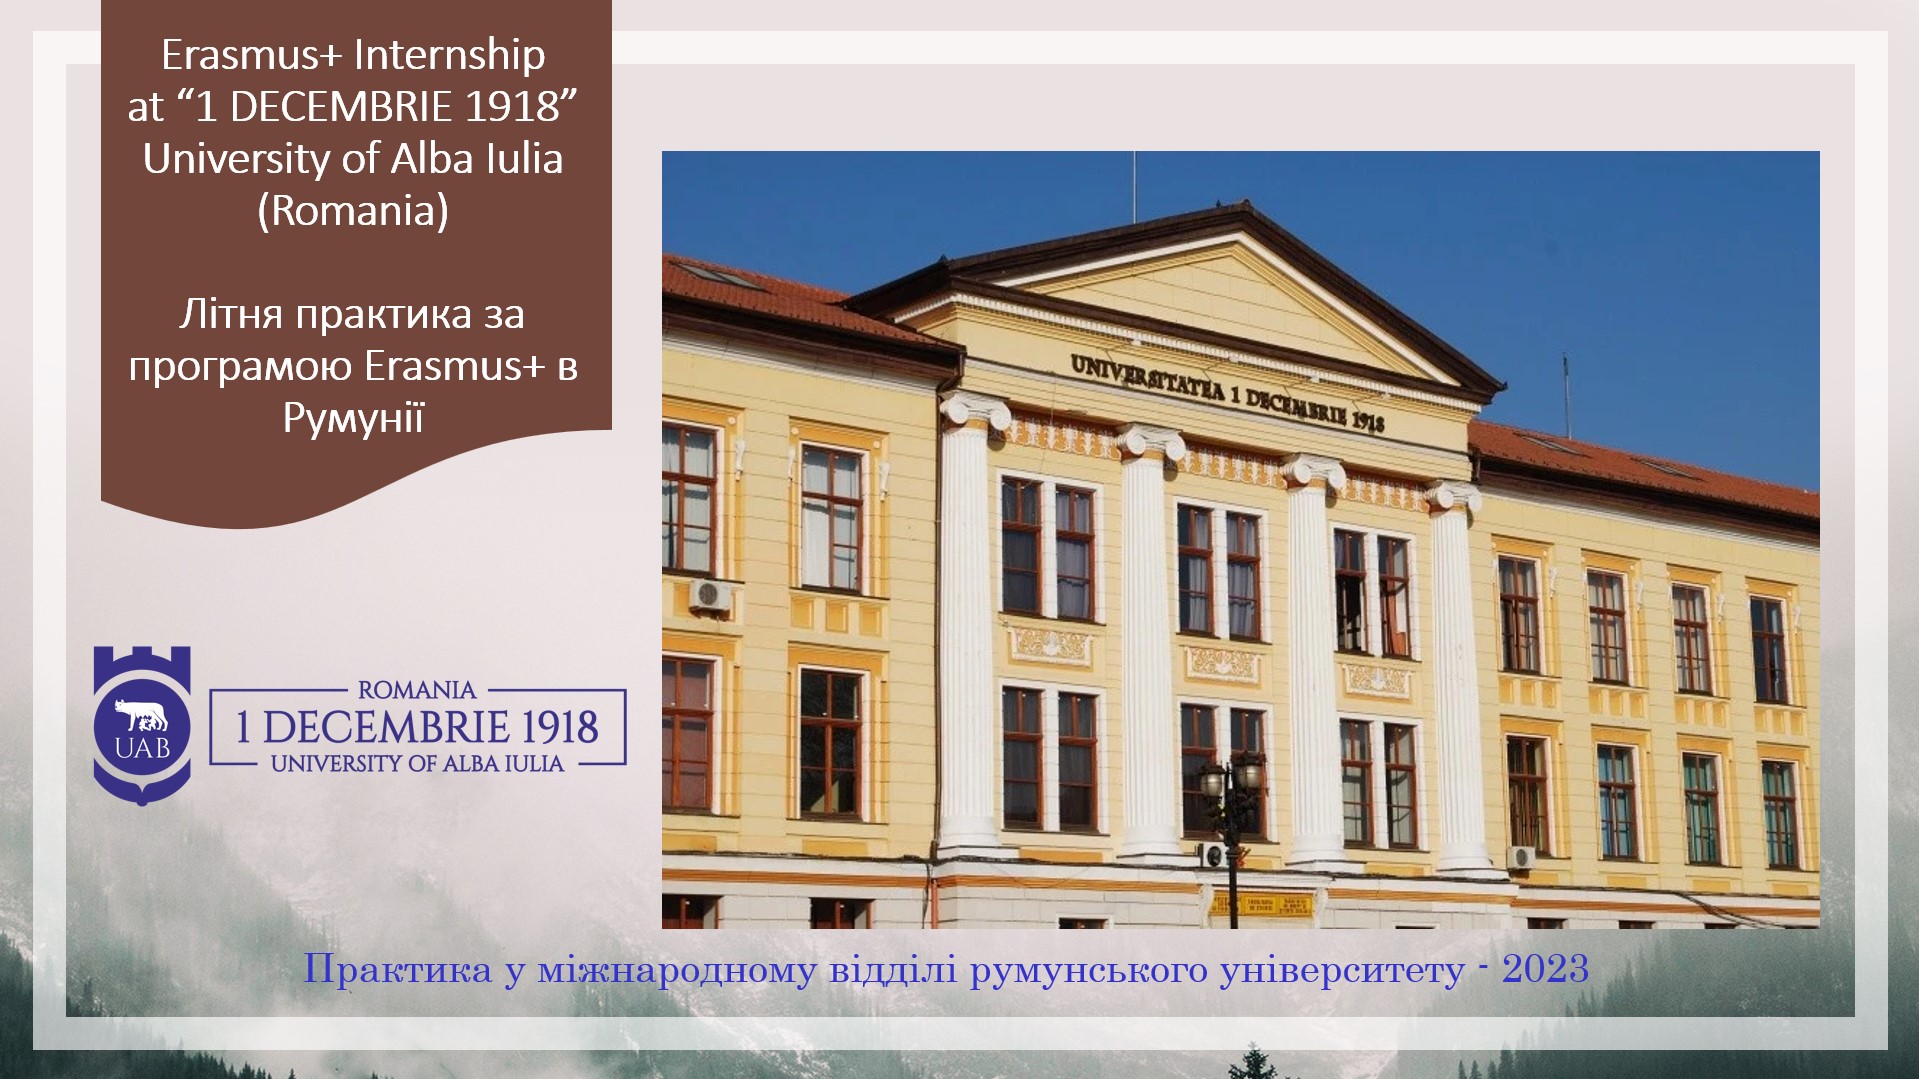 Румунський університет «1 DECEMBRIE 1918» University of Alba Iulia  запрошує 5 студентів на двомісячну практику за програмою Erasmus+ 